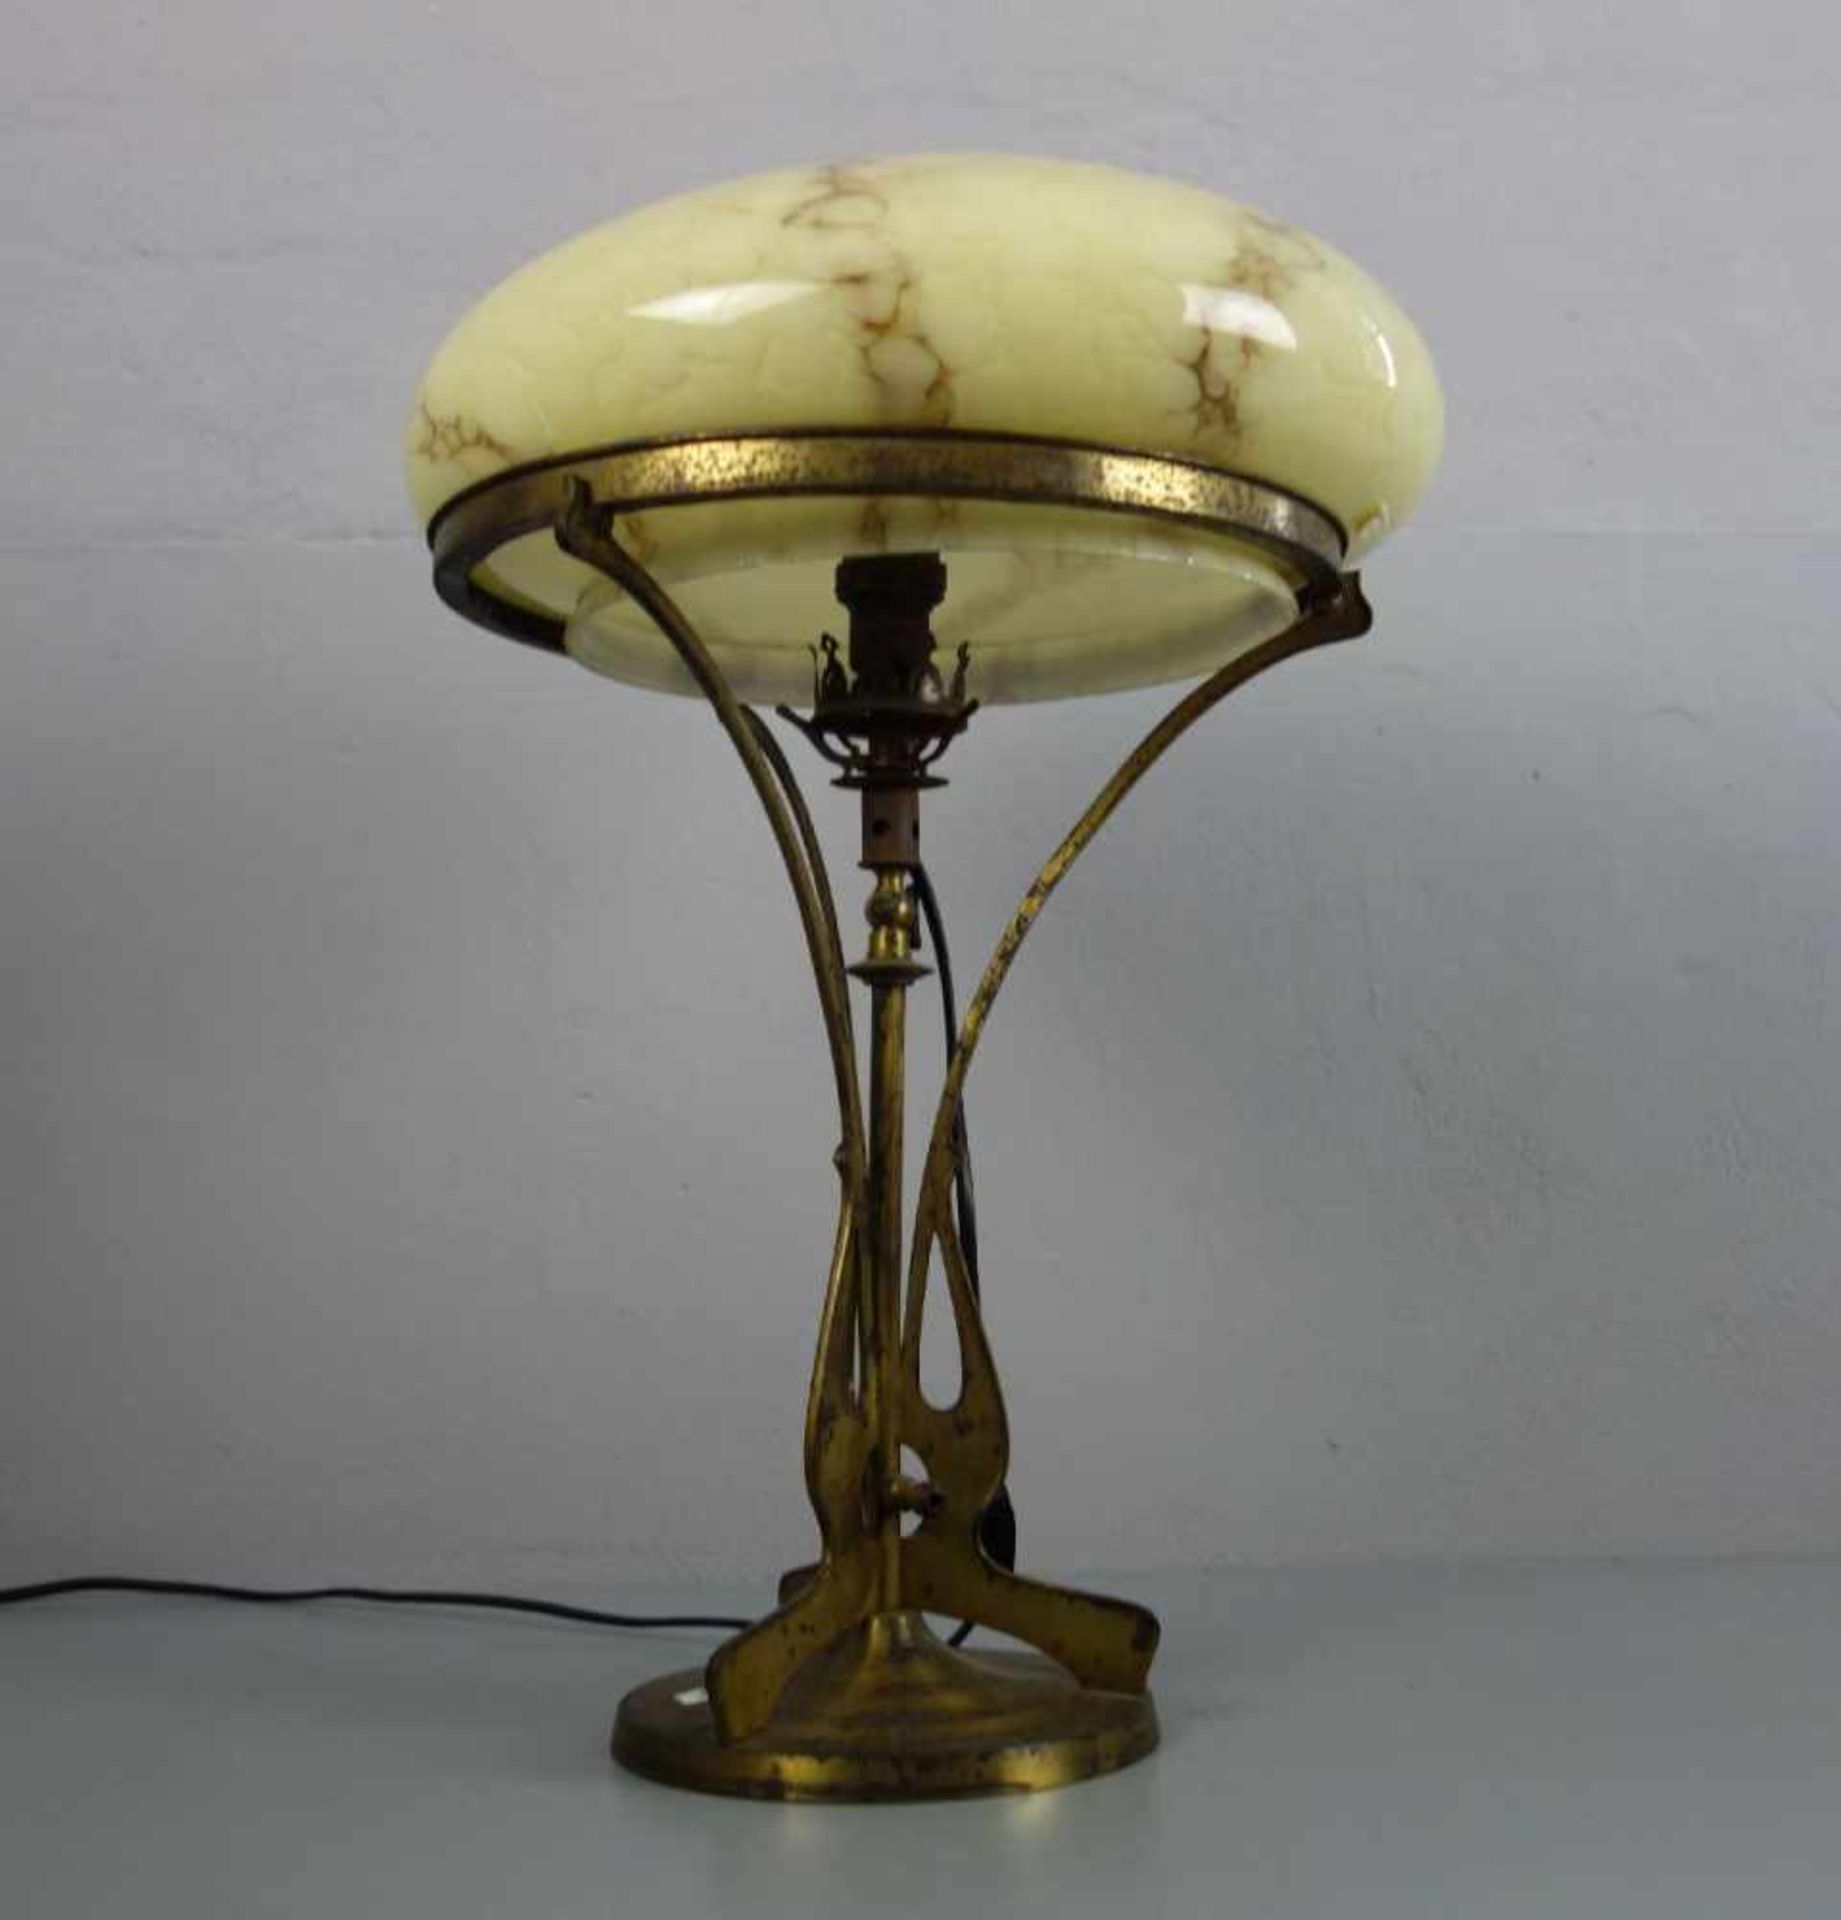 JUGENDSTIL - LAMPE / TISCHLAMPE / art nouveau lamp, um 1900. Messingfarbenes Metall, einflammig - Image 4 of 4